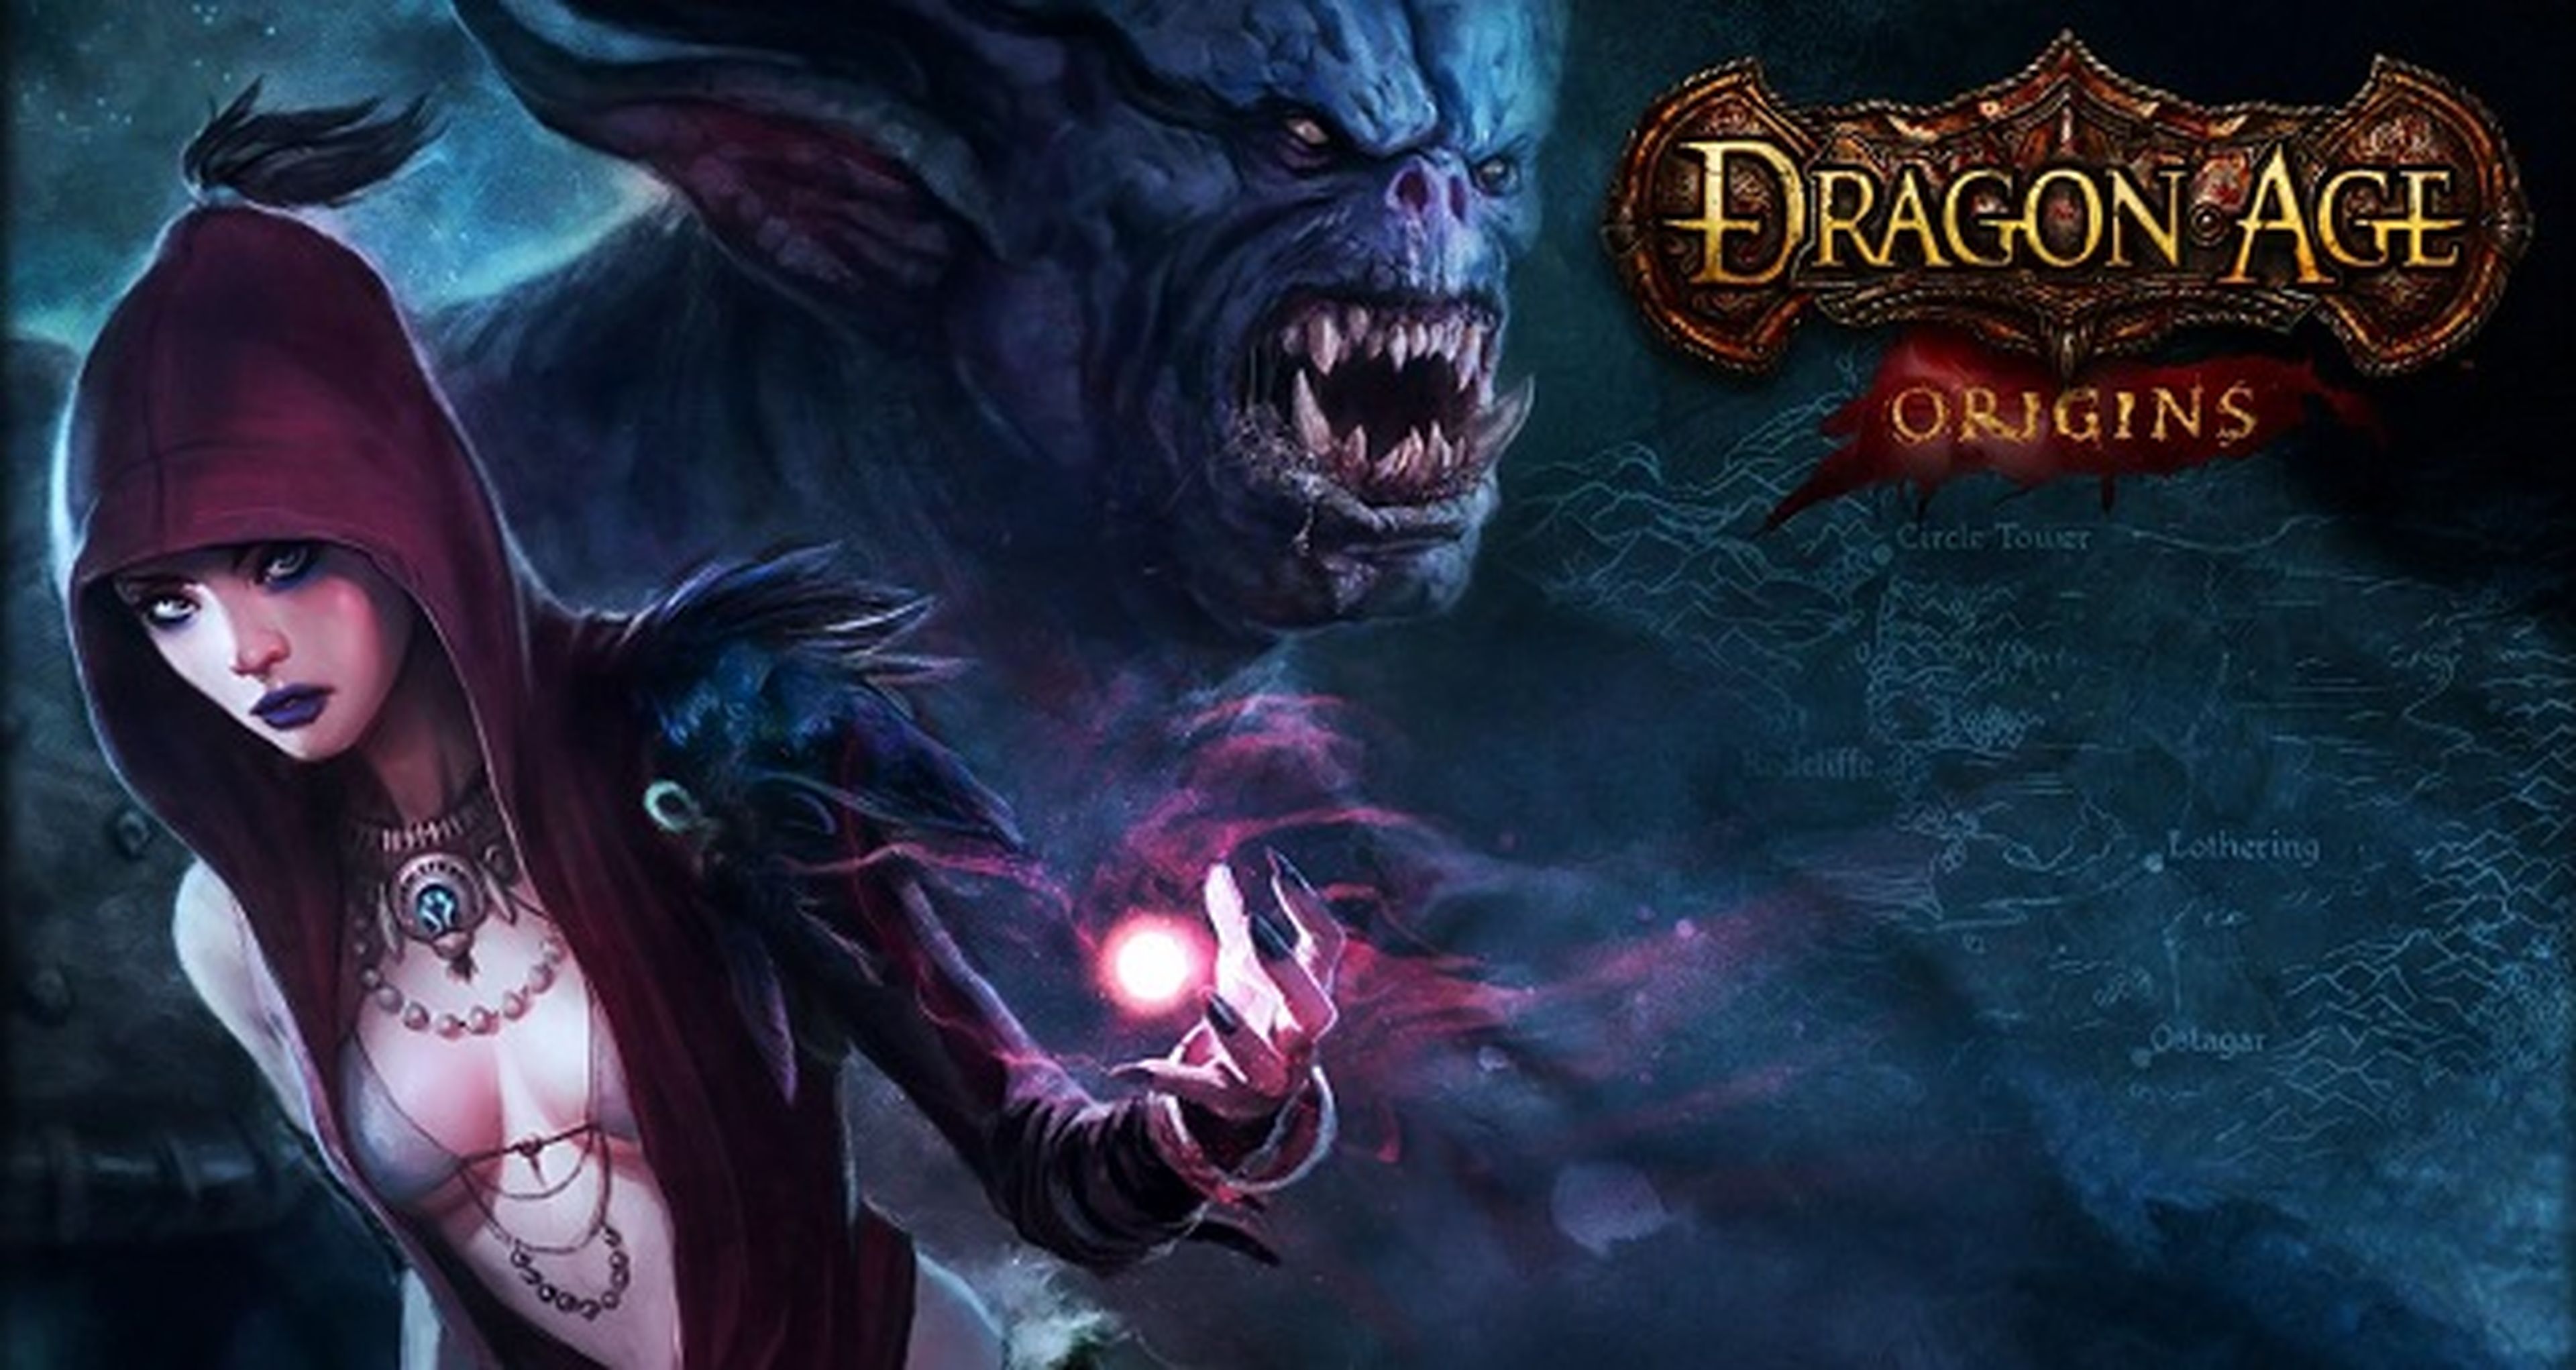 Dragon Age Origins gratis por tiempo limitado en Origin